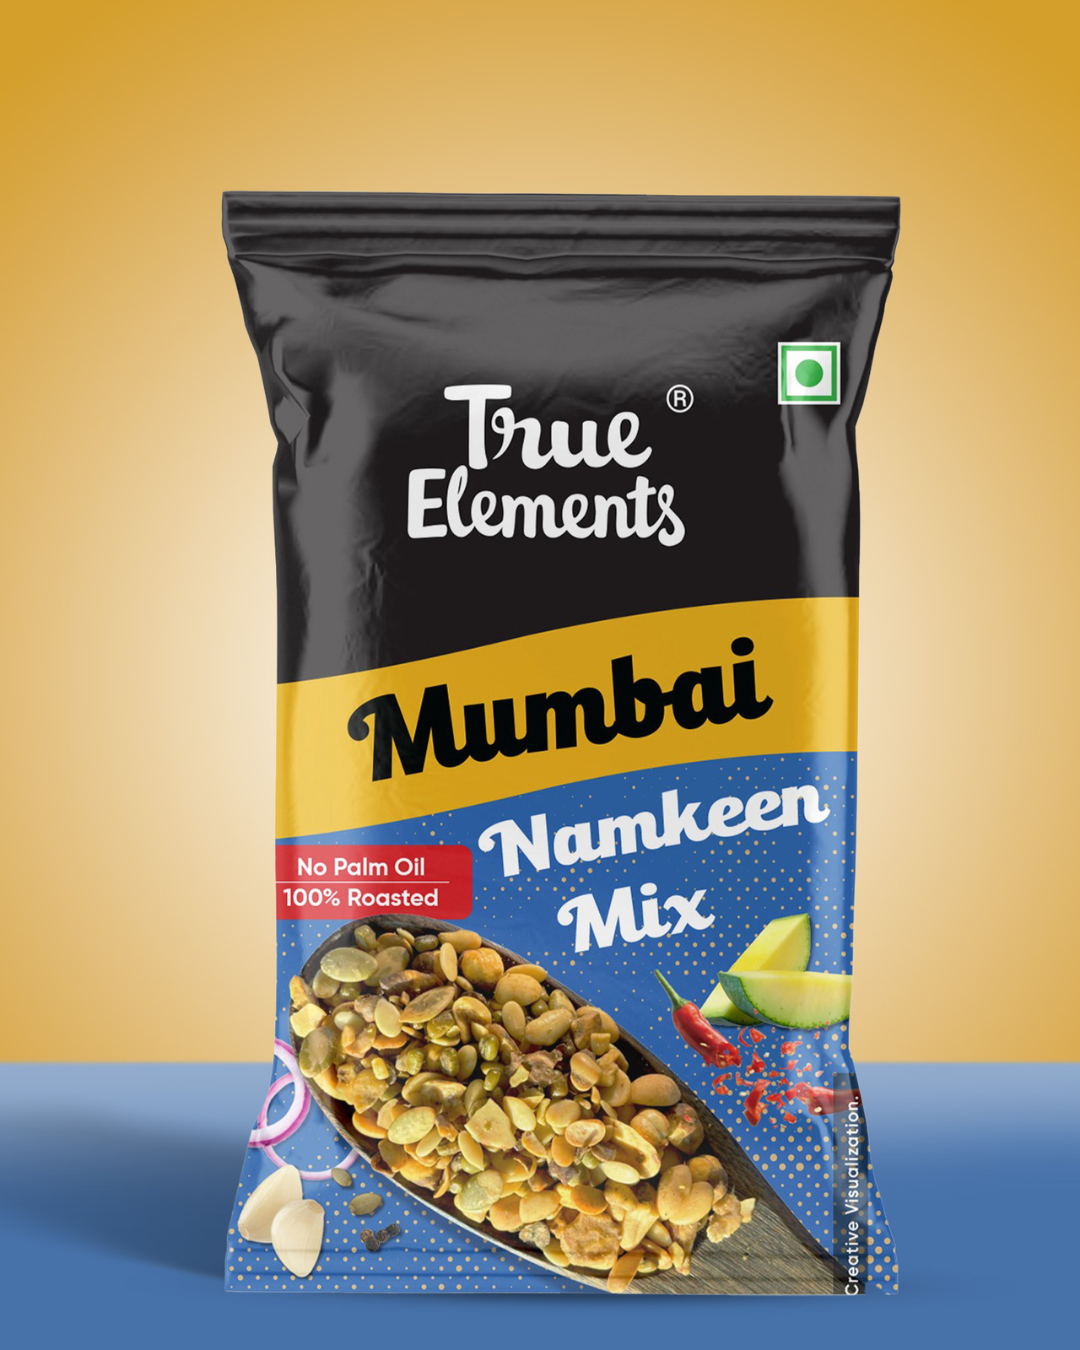 True-elements-mumbai-namkeen-mix